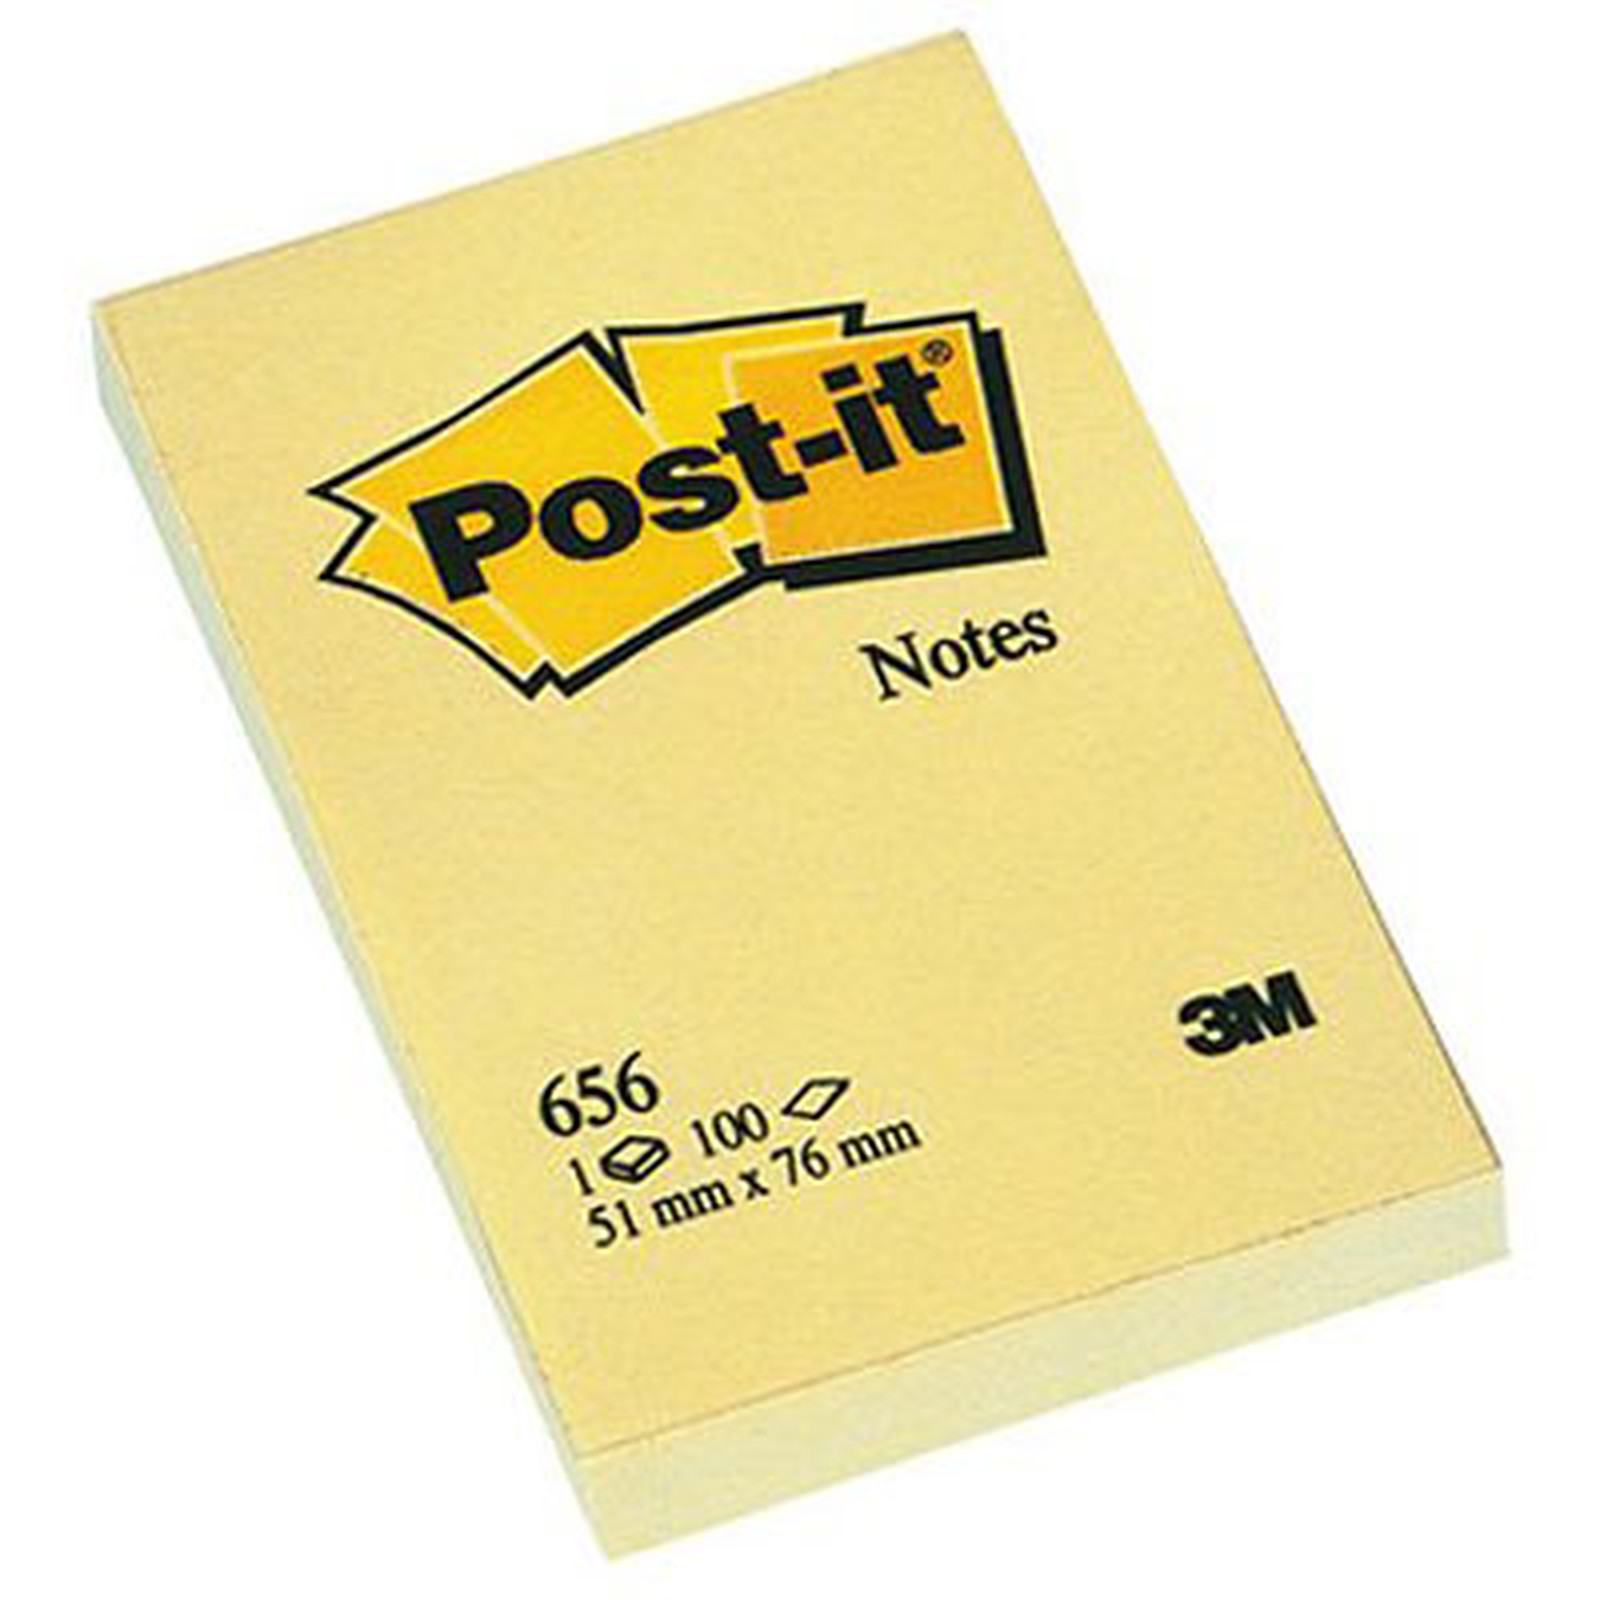 Post-it Bloc 100 feuillets 51 x 76 mm Jaune - Bloc repositionnable Post-it